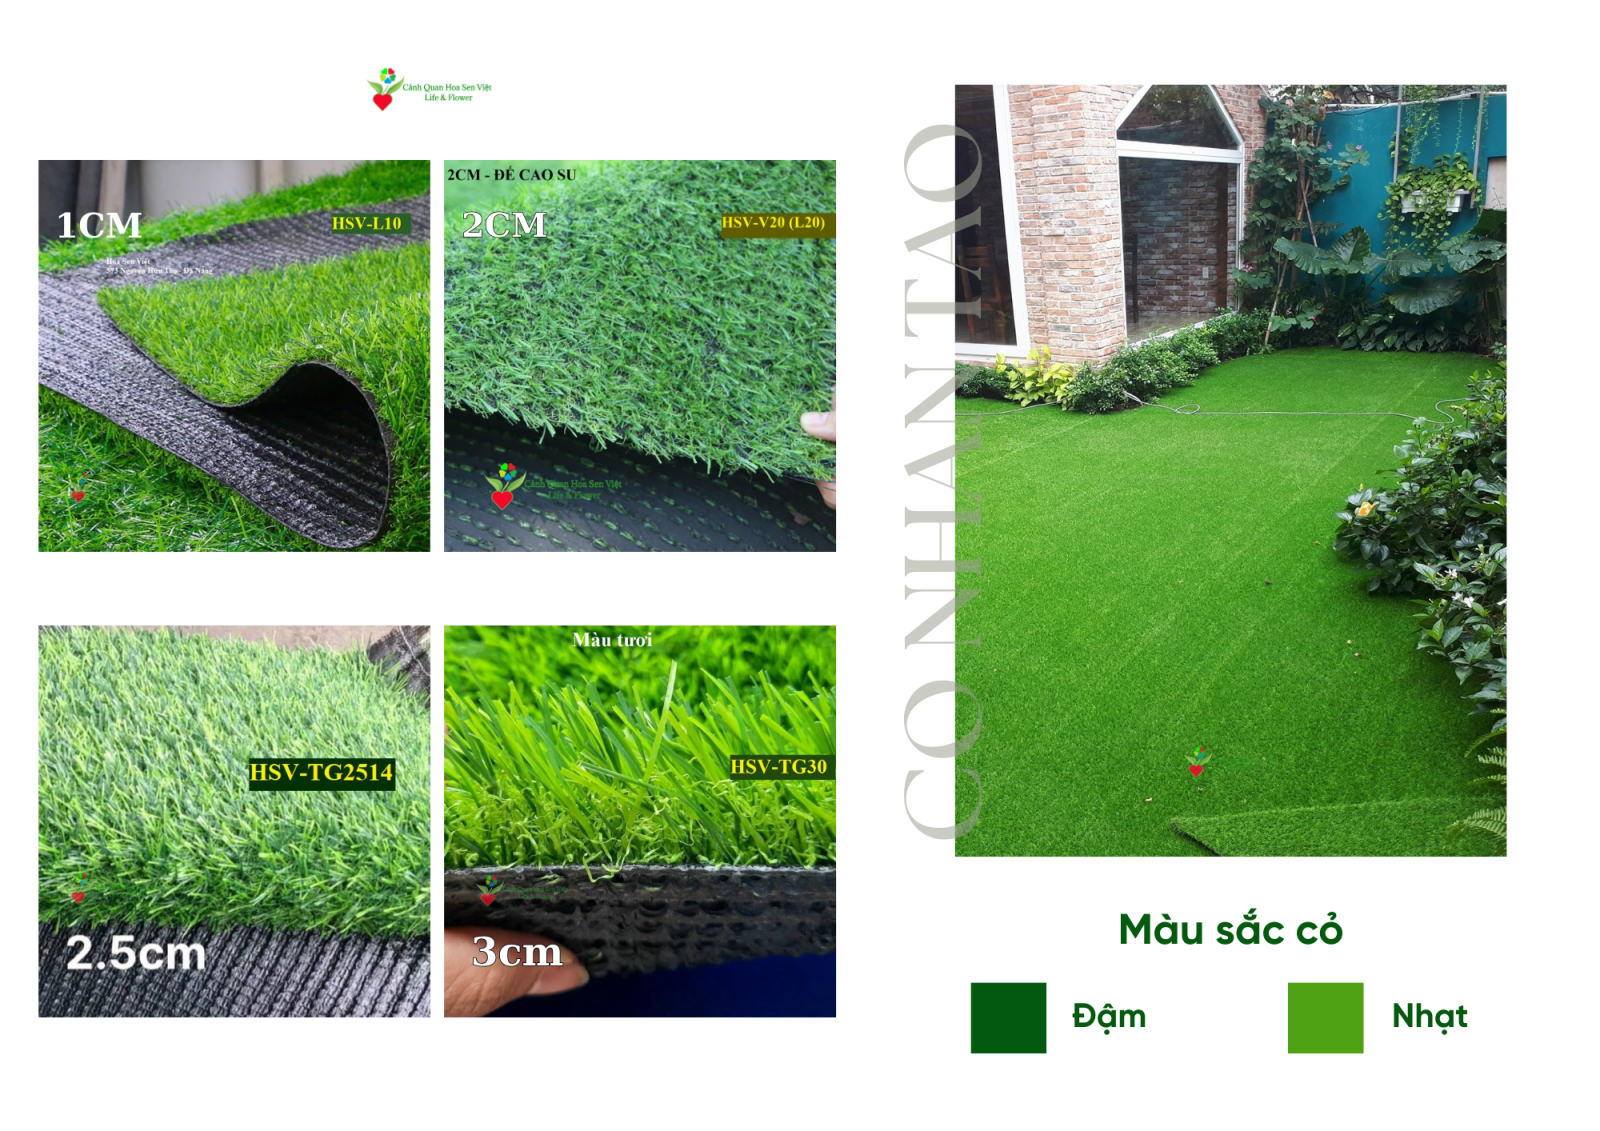 Thảm cỏ nhân tạo 2cm 2 lớp - Cửa hàng thảm cỏ nhân tạo giá rẻ Đà Nẵng